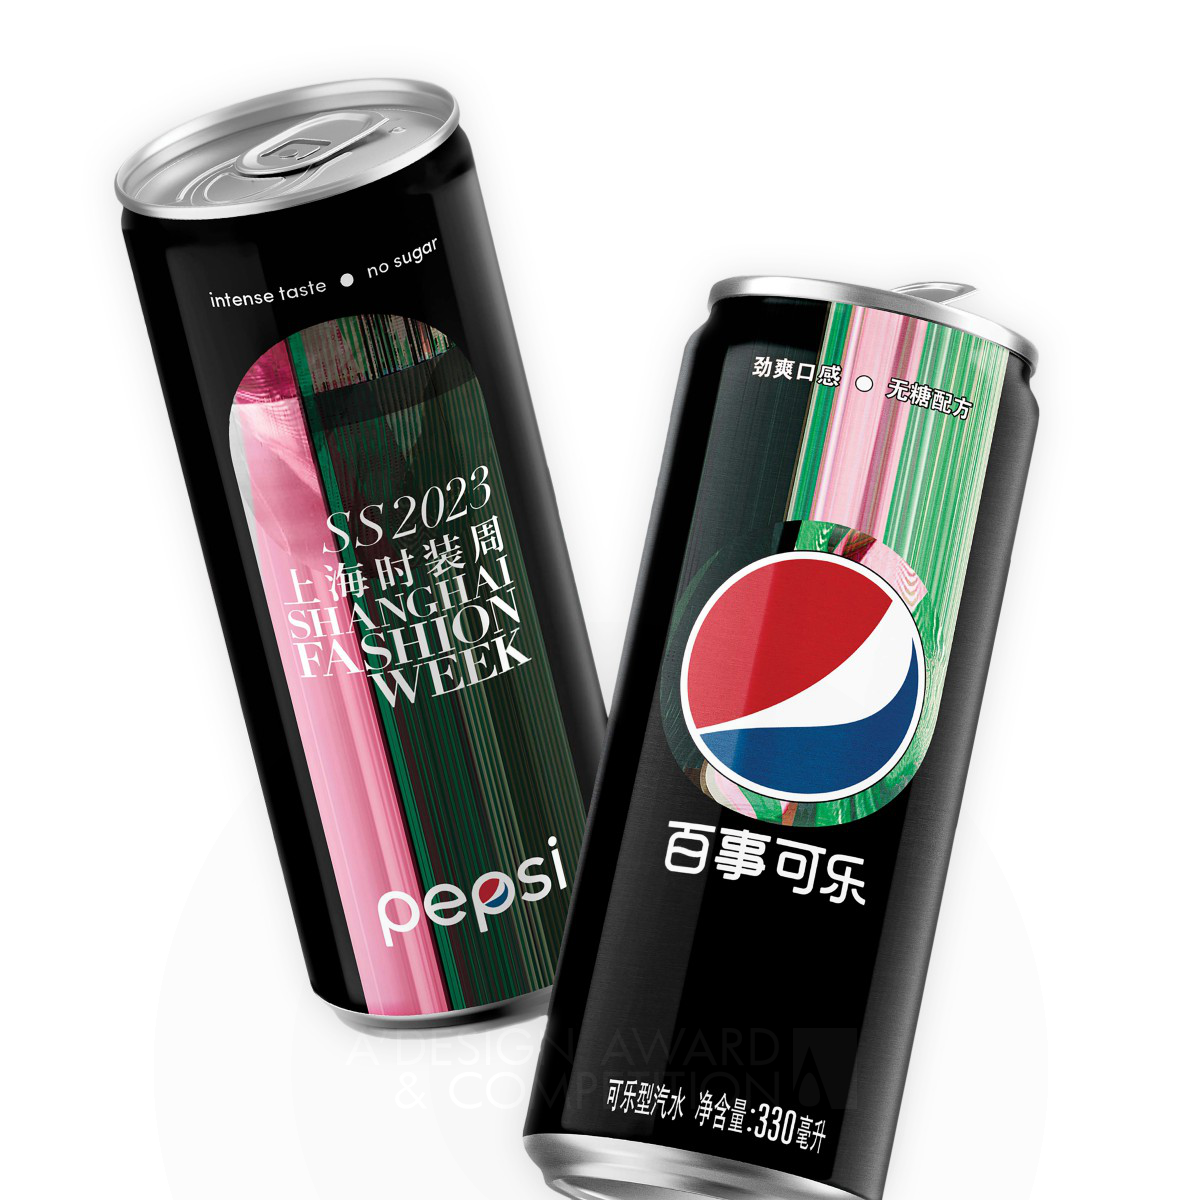 Pepsi Black x Digital Shanghai FW 2023 Beverage Packaging